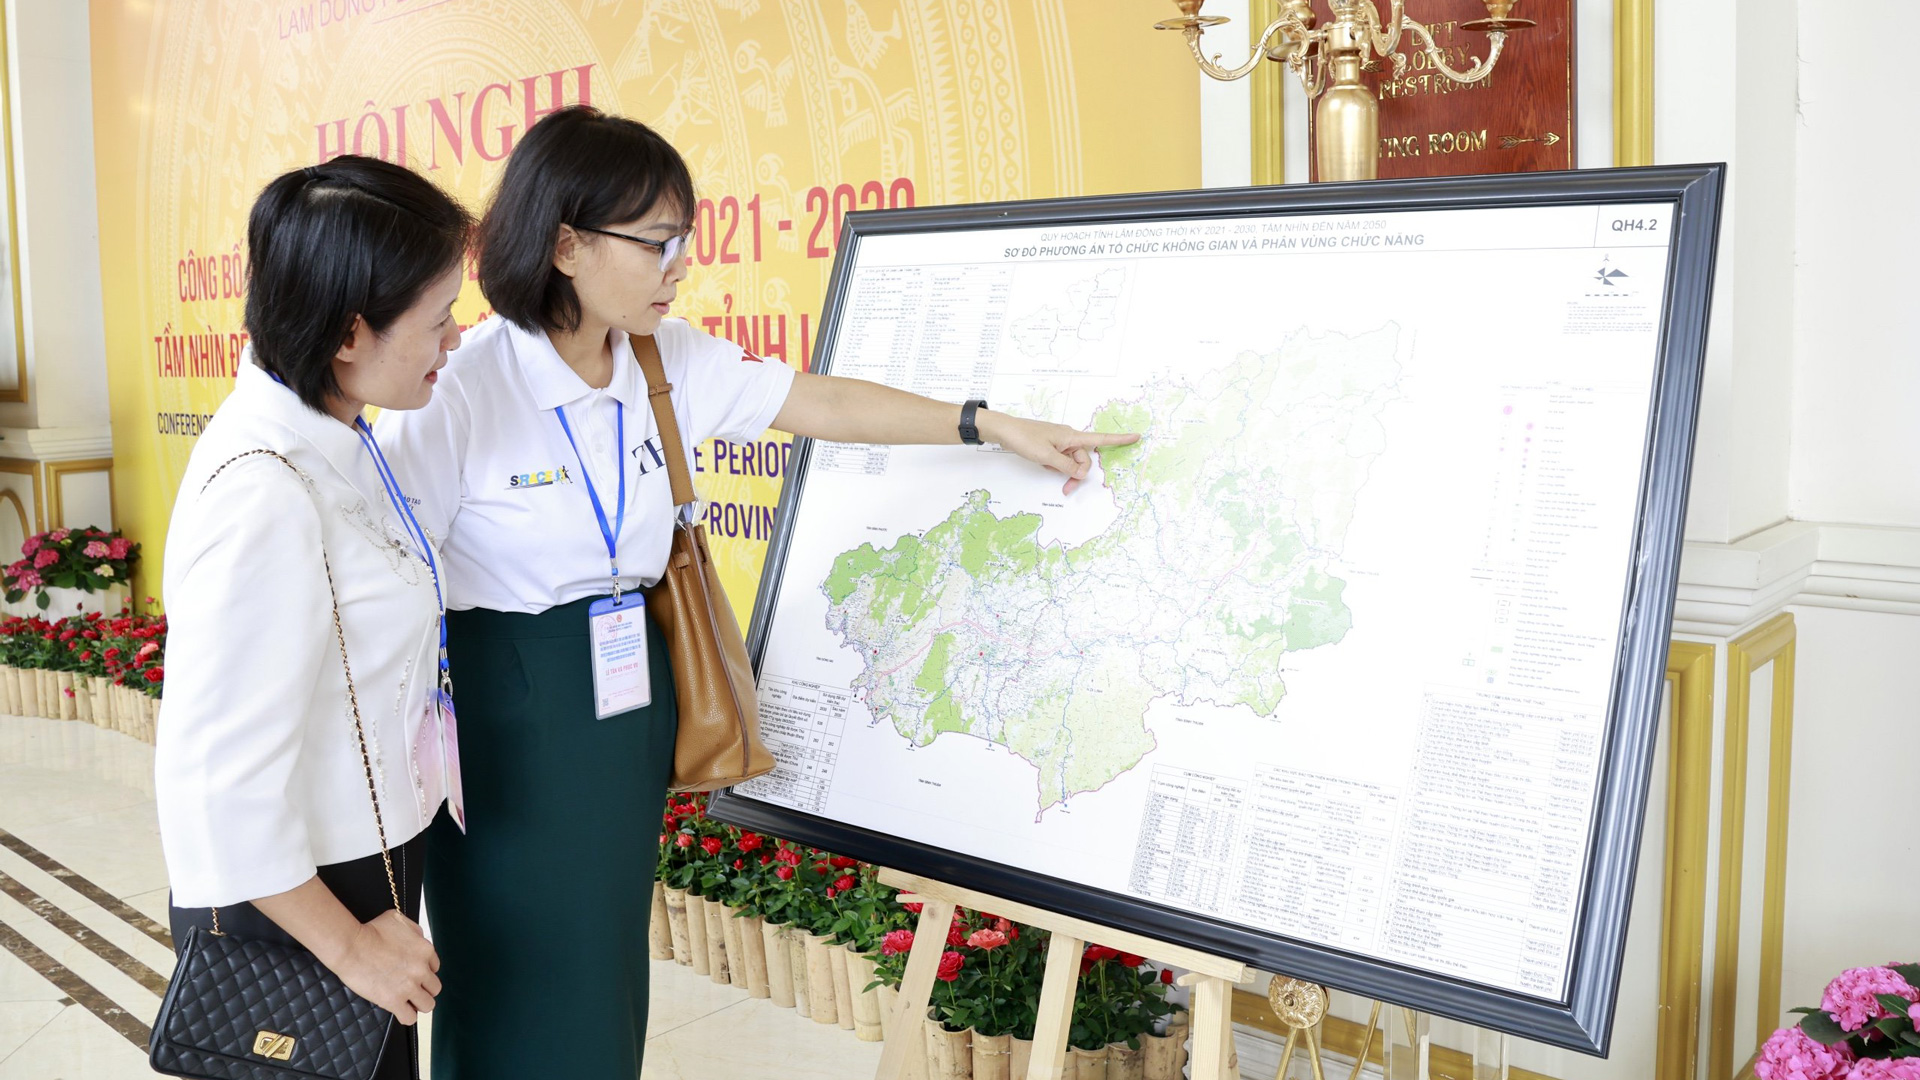 Đại biểu xem sơ đồ phương án tổ chức không gian và phân vùng chức năng tỉnh Lâm Đồng